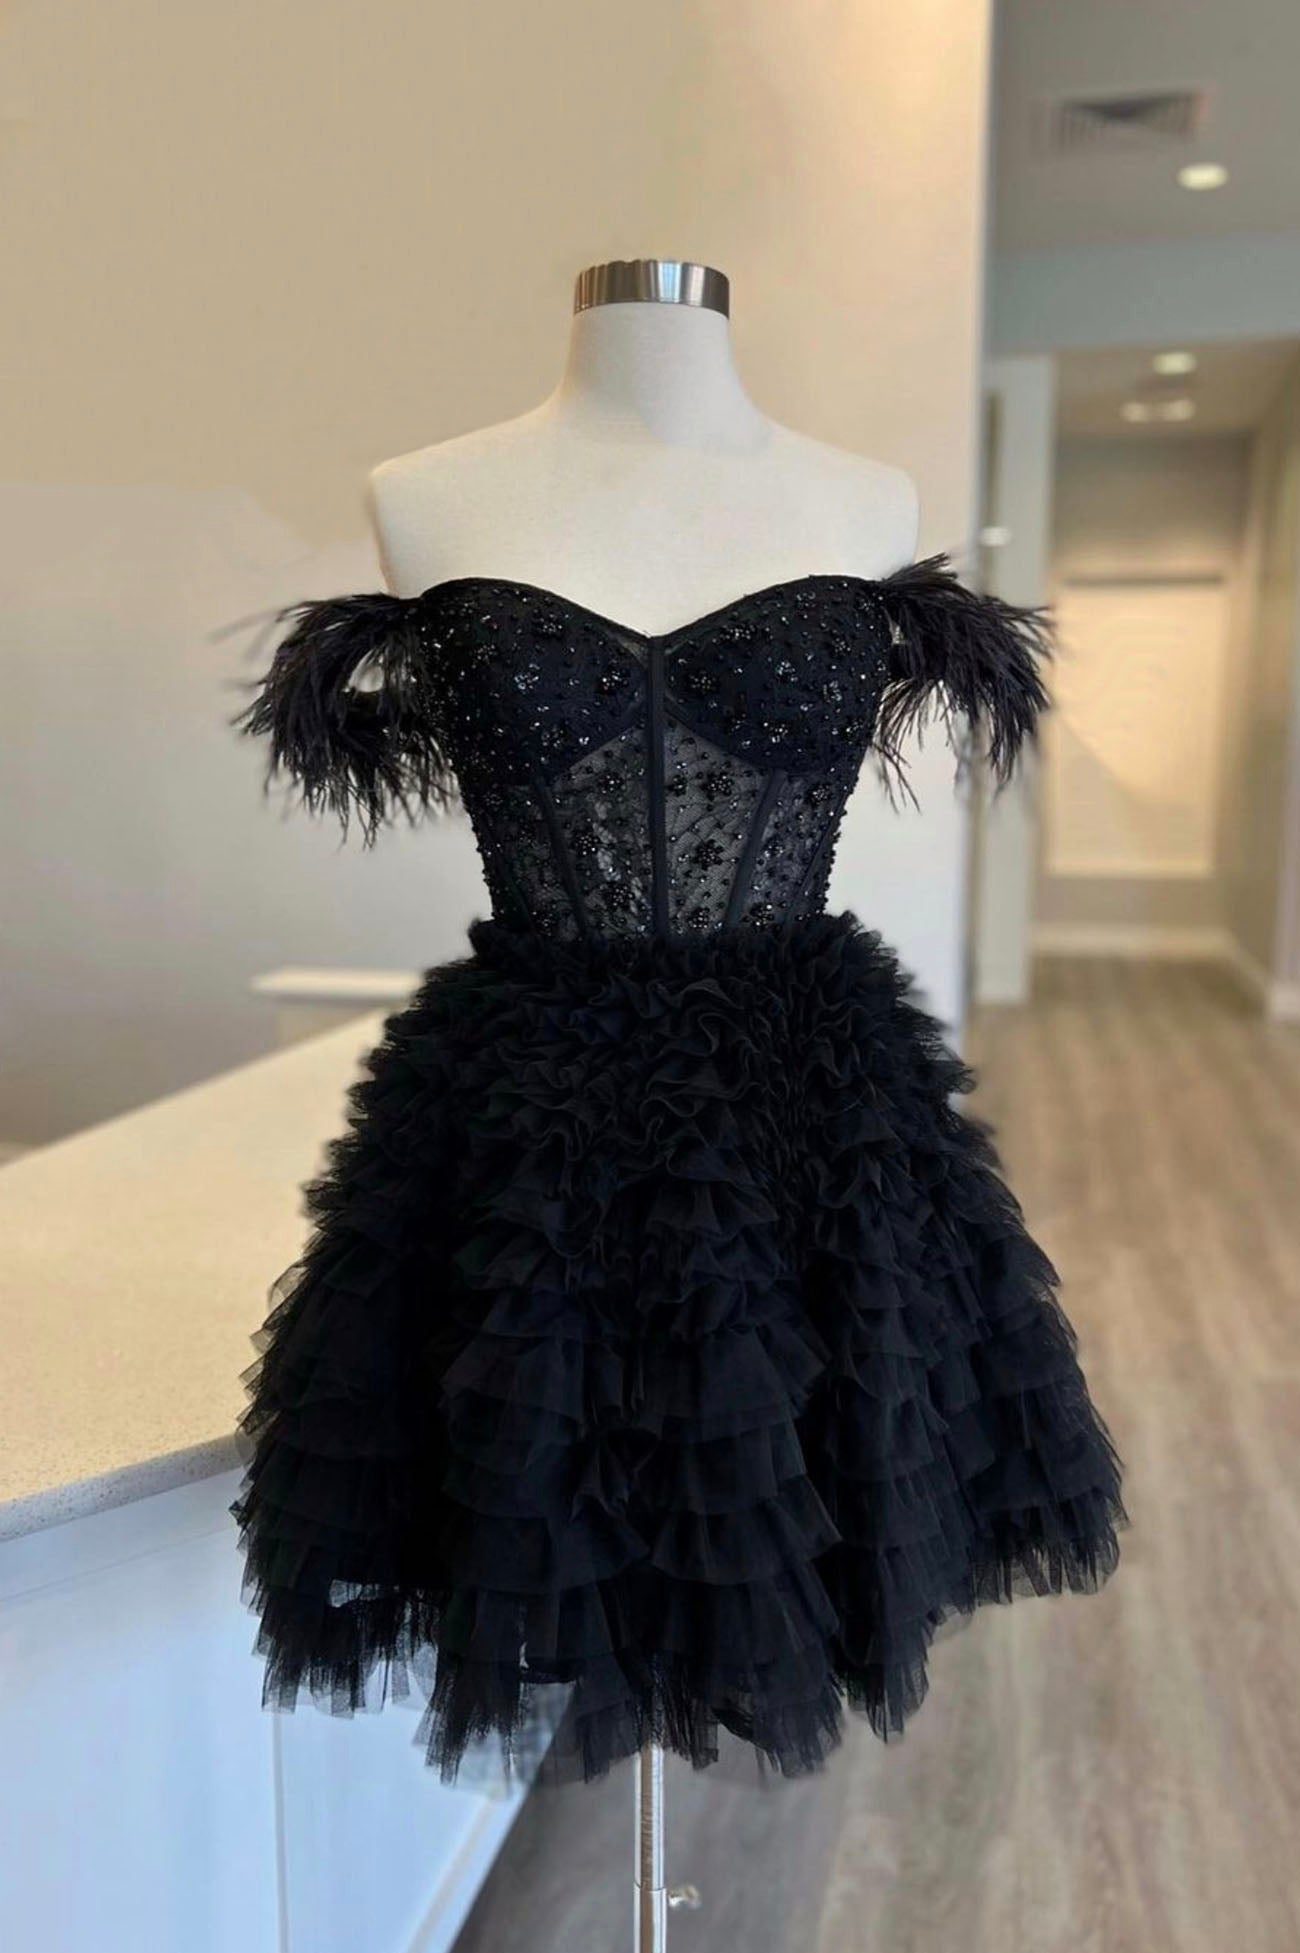 Bridesmaid Dresses Design, Black Tulle Knee Length Prom Dress, Black Off Shoulder Evening Dress